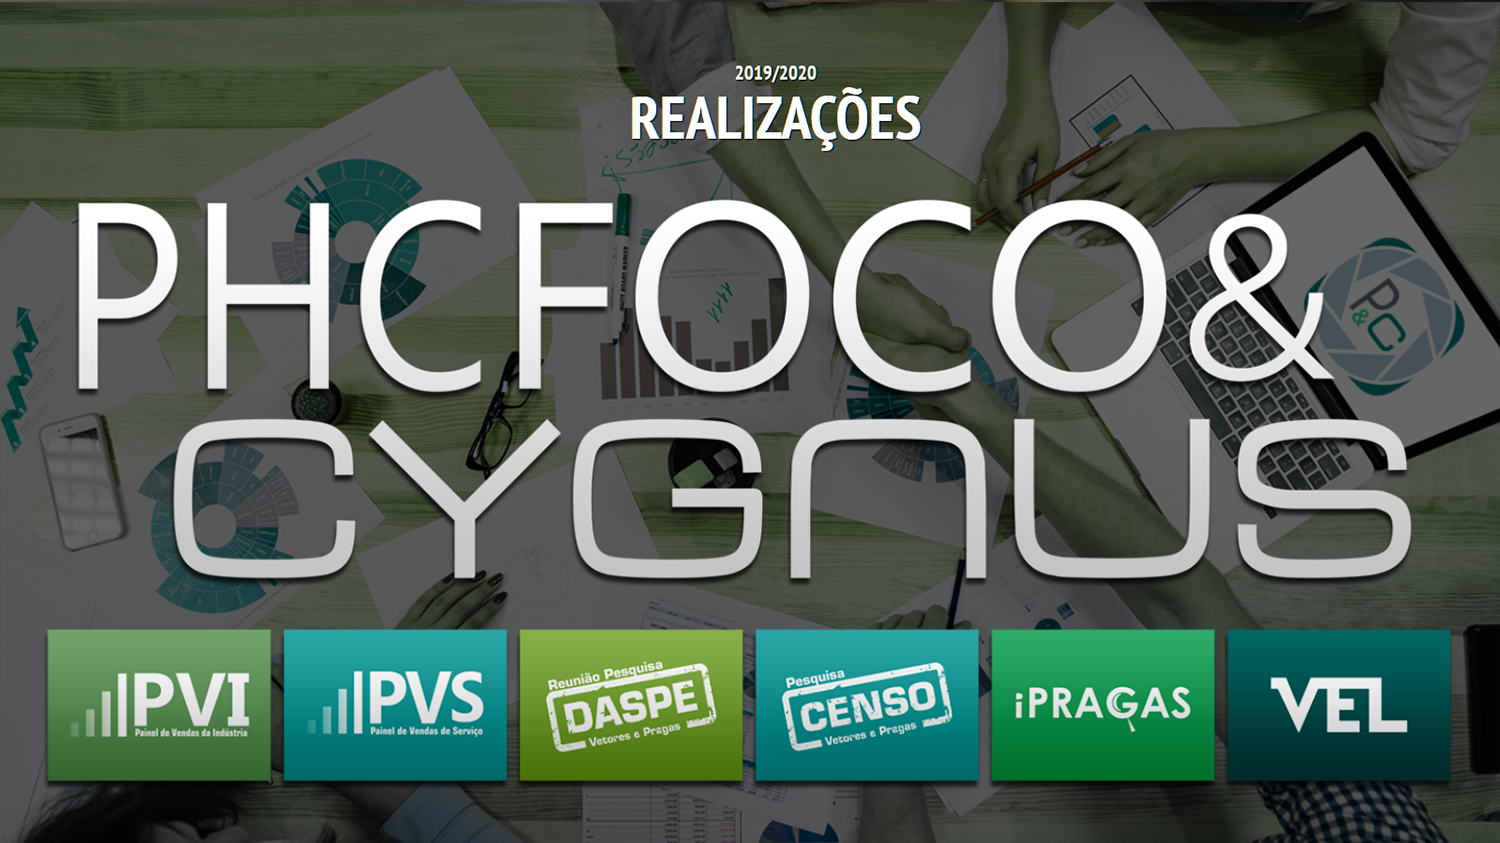 iPRAGAS.com.br